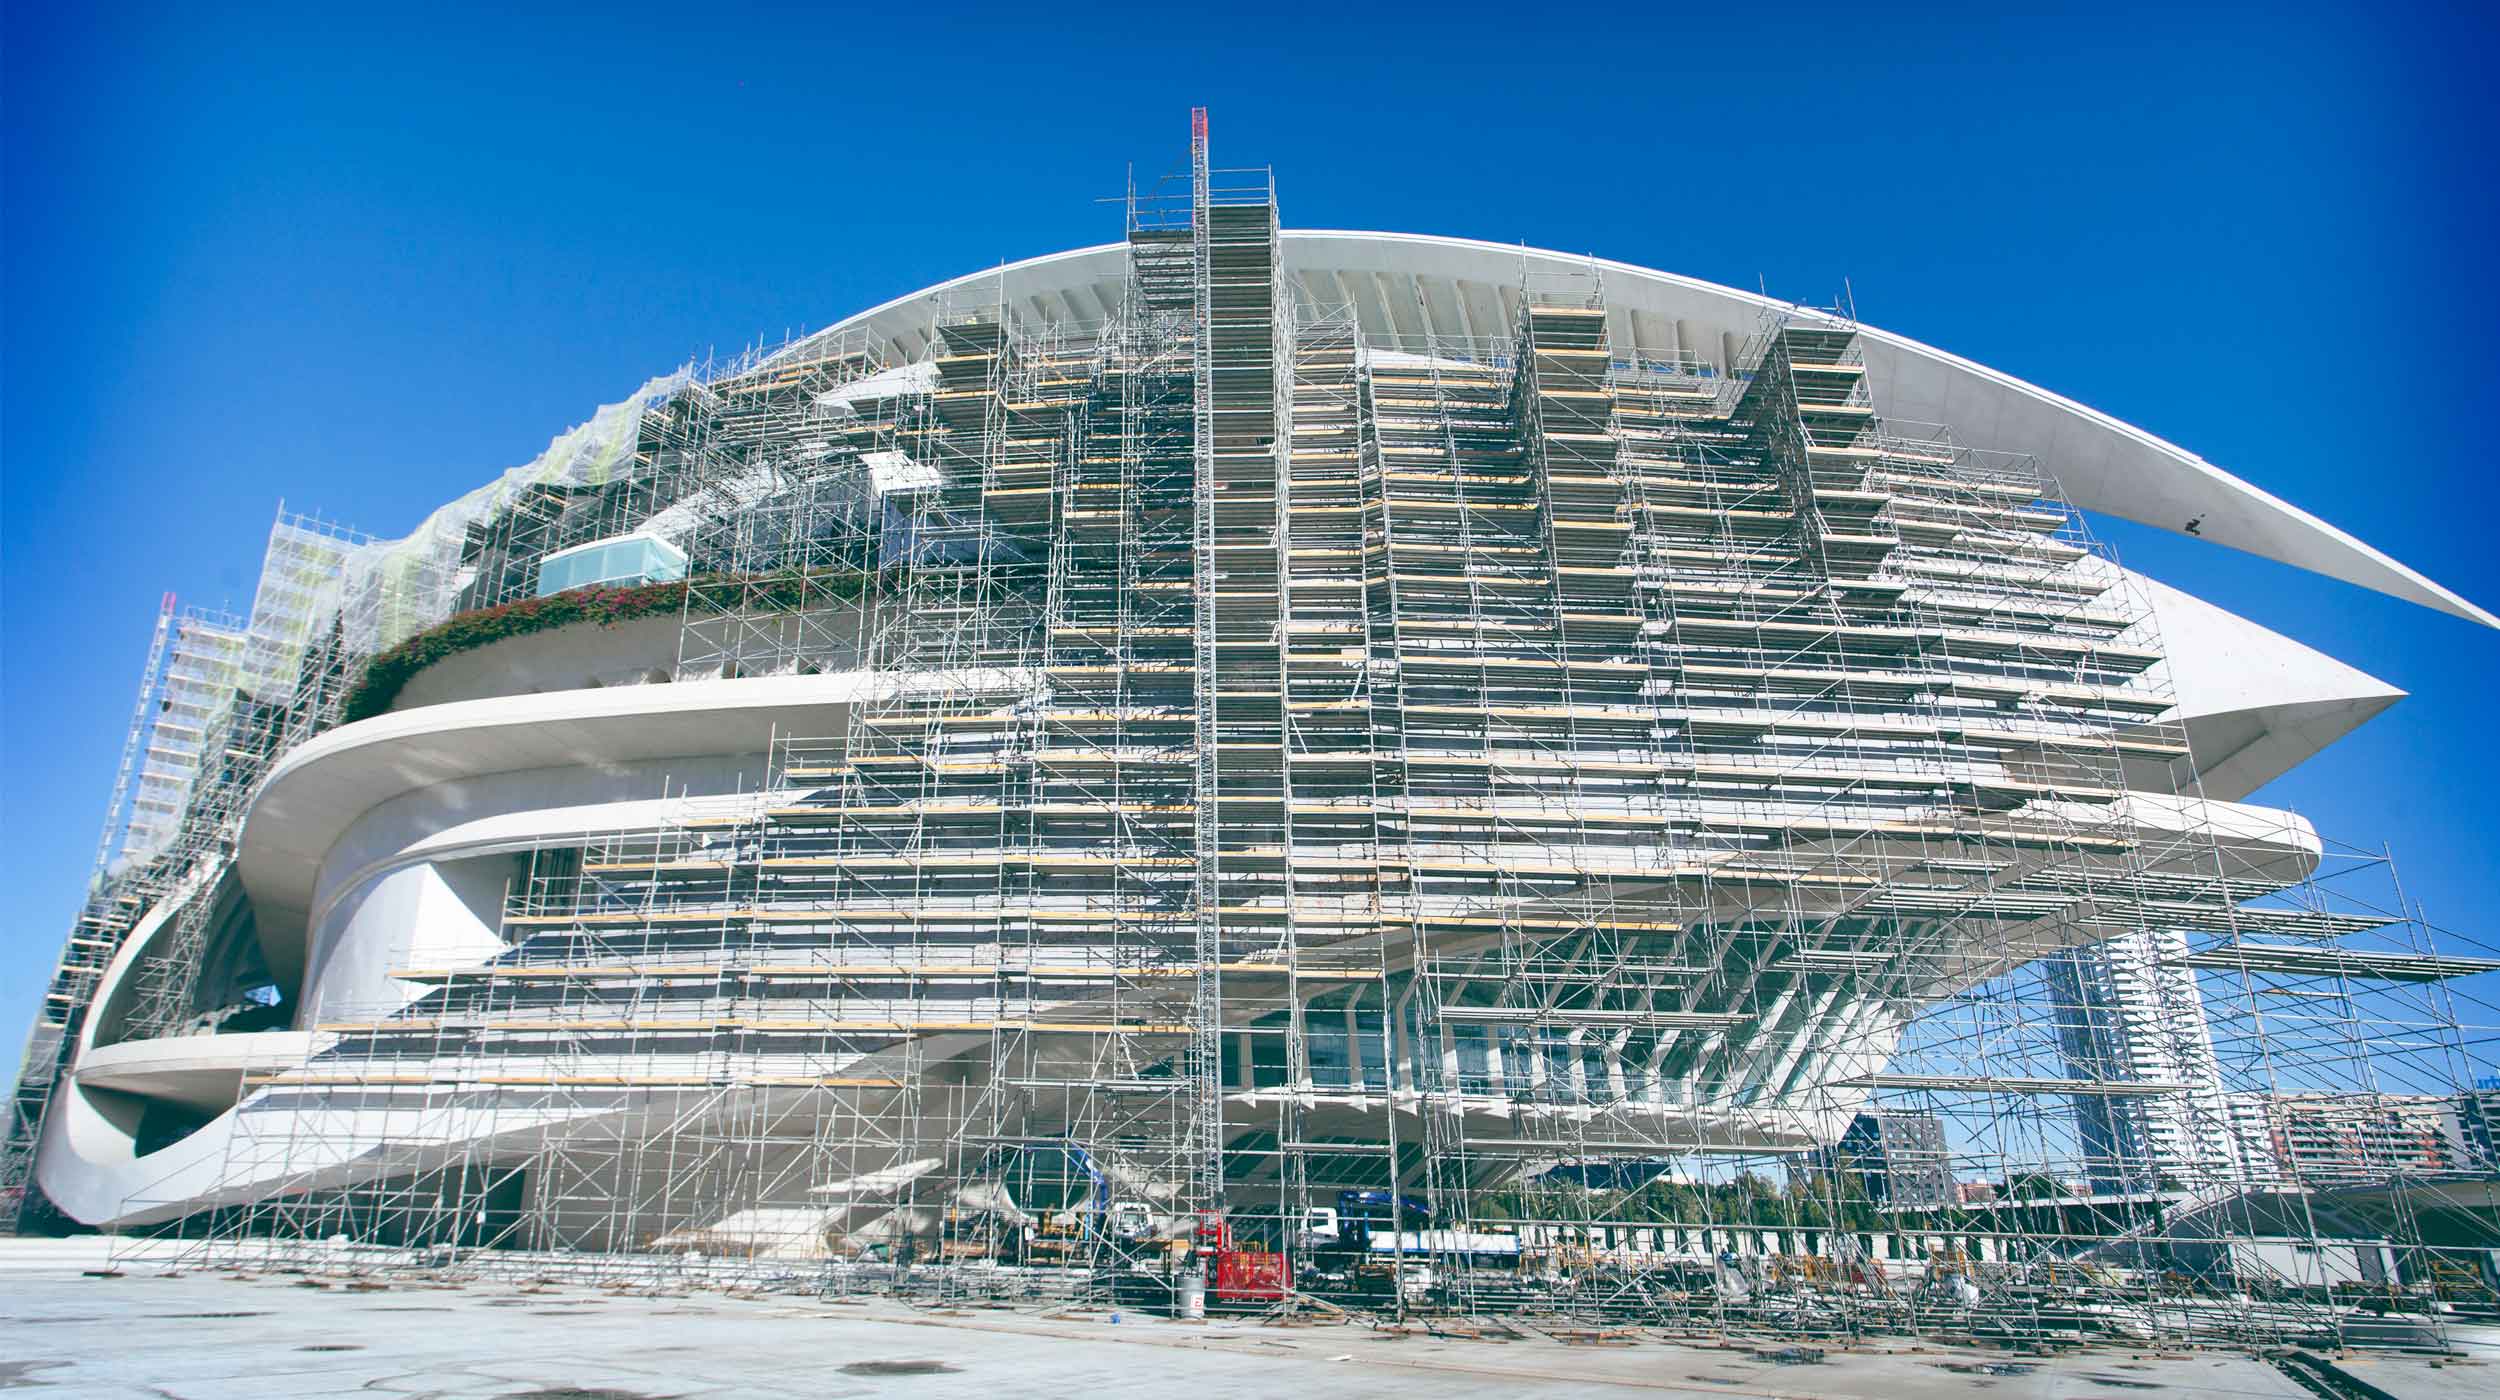 Para abarcar la forma curva del edificio del Palacio de las Artes, se han empleado 48.000 m³ de volumen de andamio y 12.000 m² de andamio de fachada mediante vuelos consecutivos.